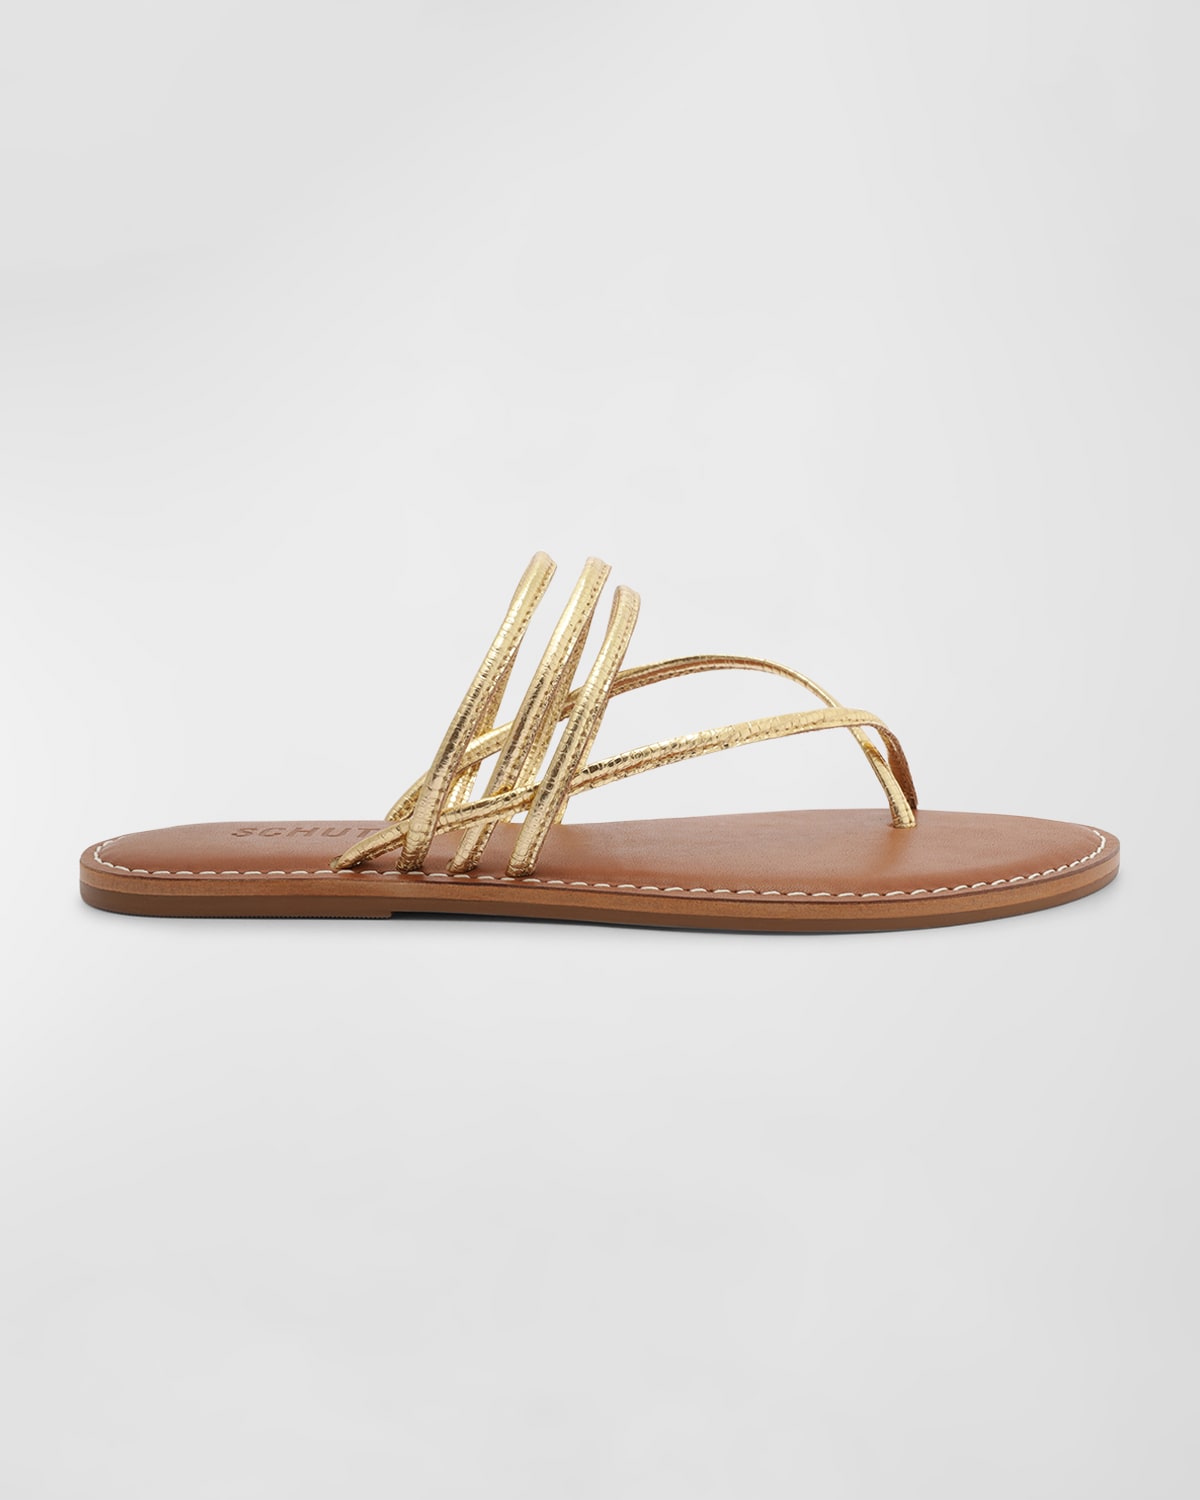 Schutz Mirielle Metallic Slide Sandals In Ouro Claro Orch